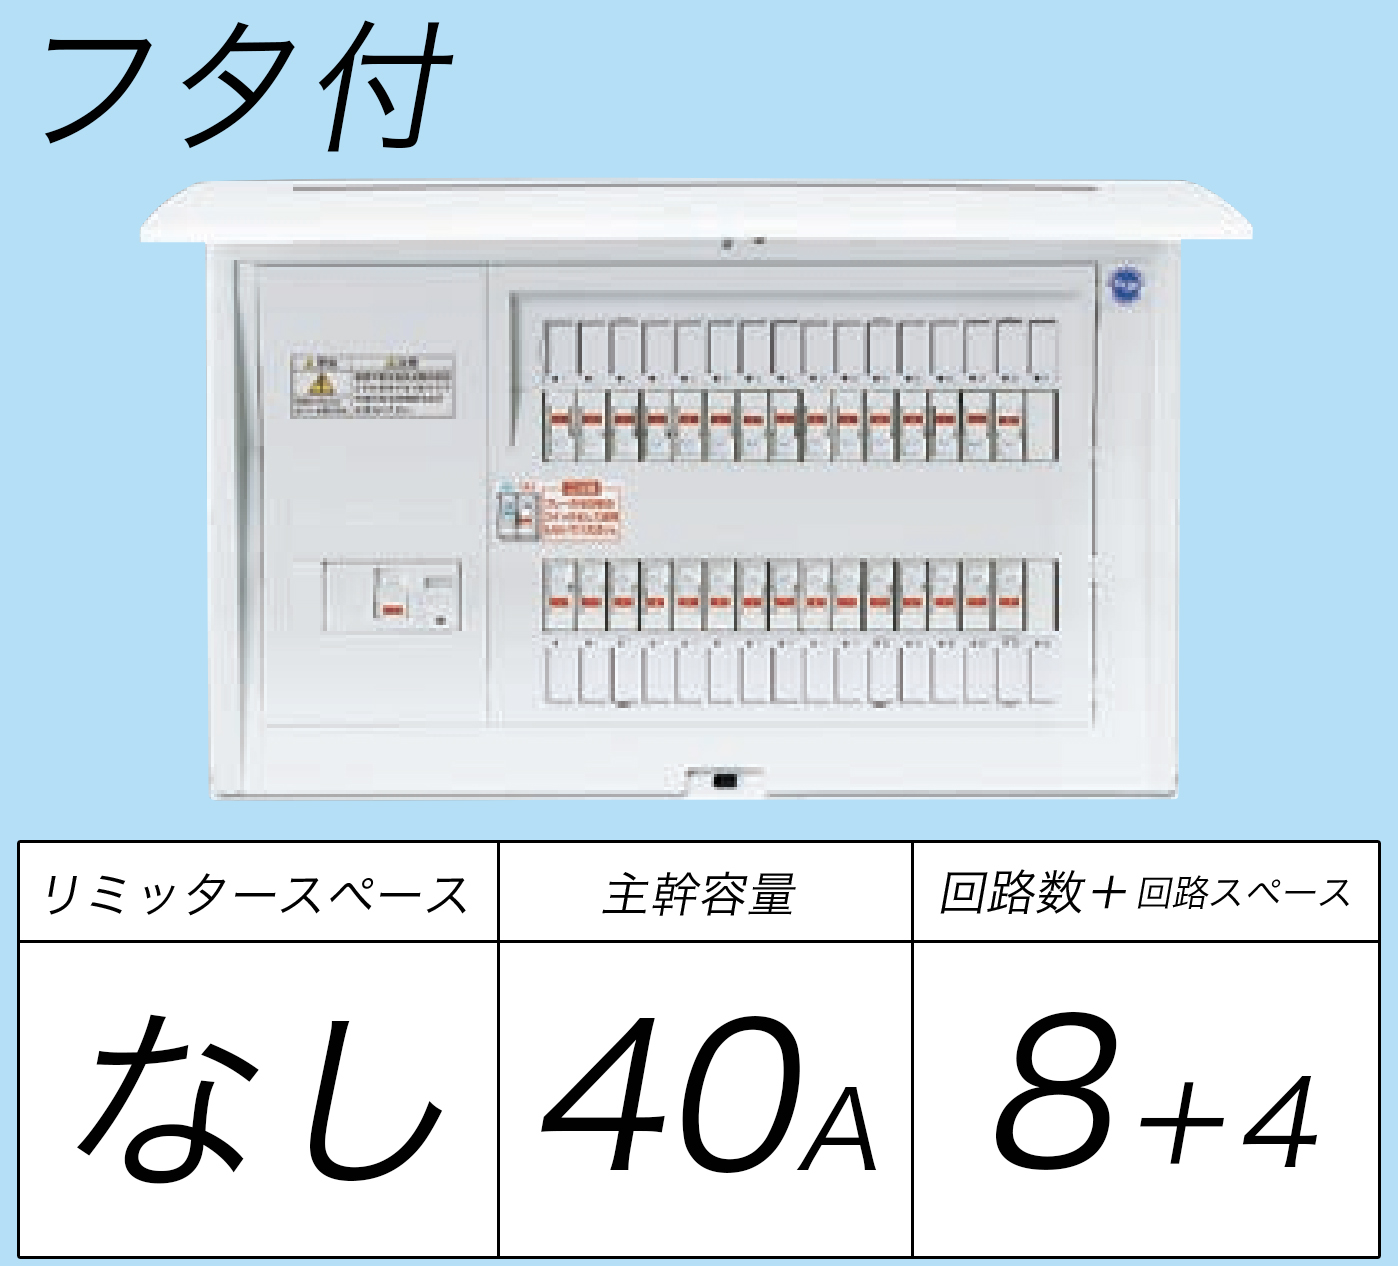 日本に Panasonic パナソニック BQR8484 住宅分電盤 コスモパネルコンパクト21 標準タイプ リミッタースペースなし 40A 